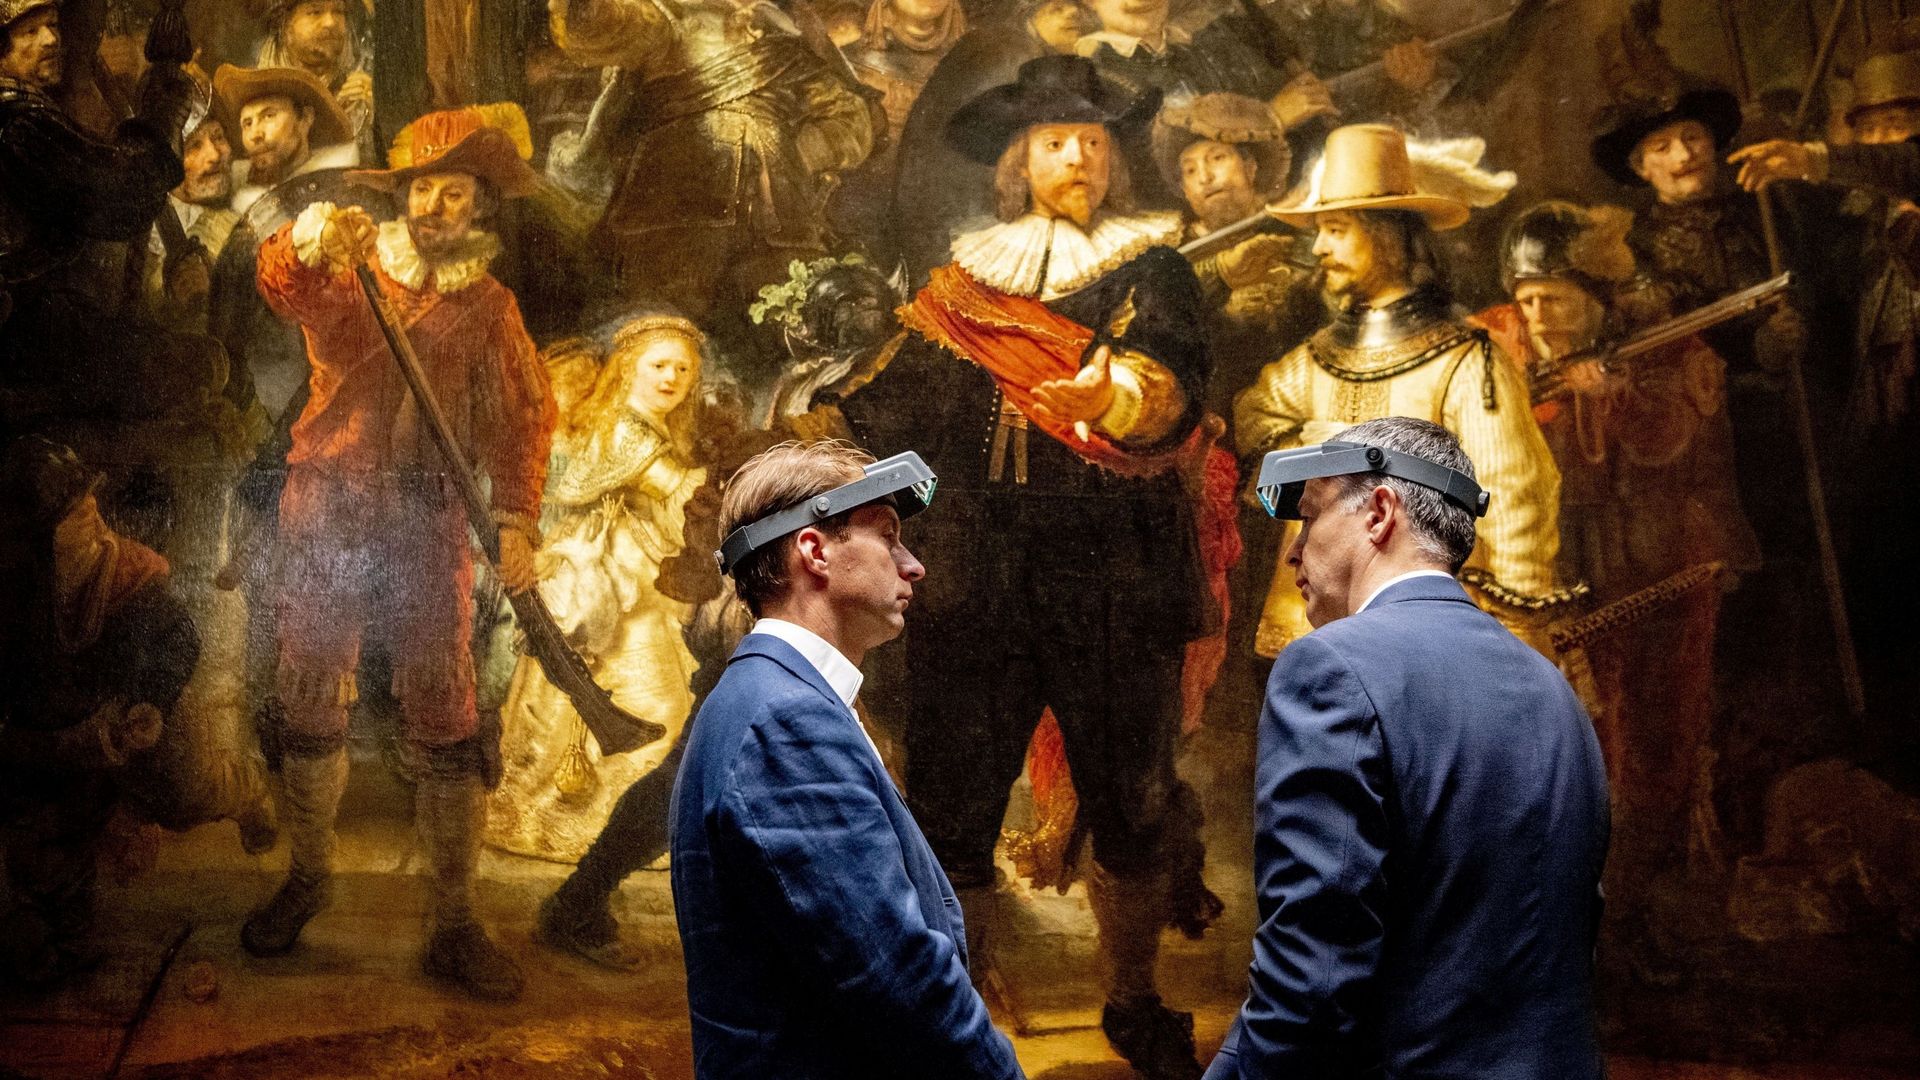 La restauration du célèbre Rembrandt "La Ronde de nuit" a commencé à Amsterdam